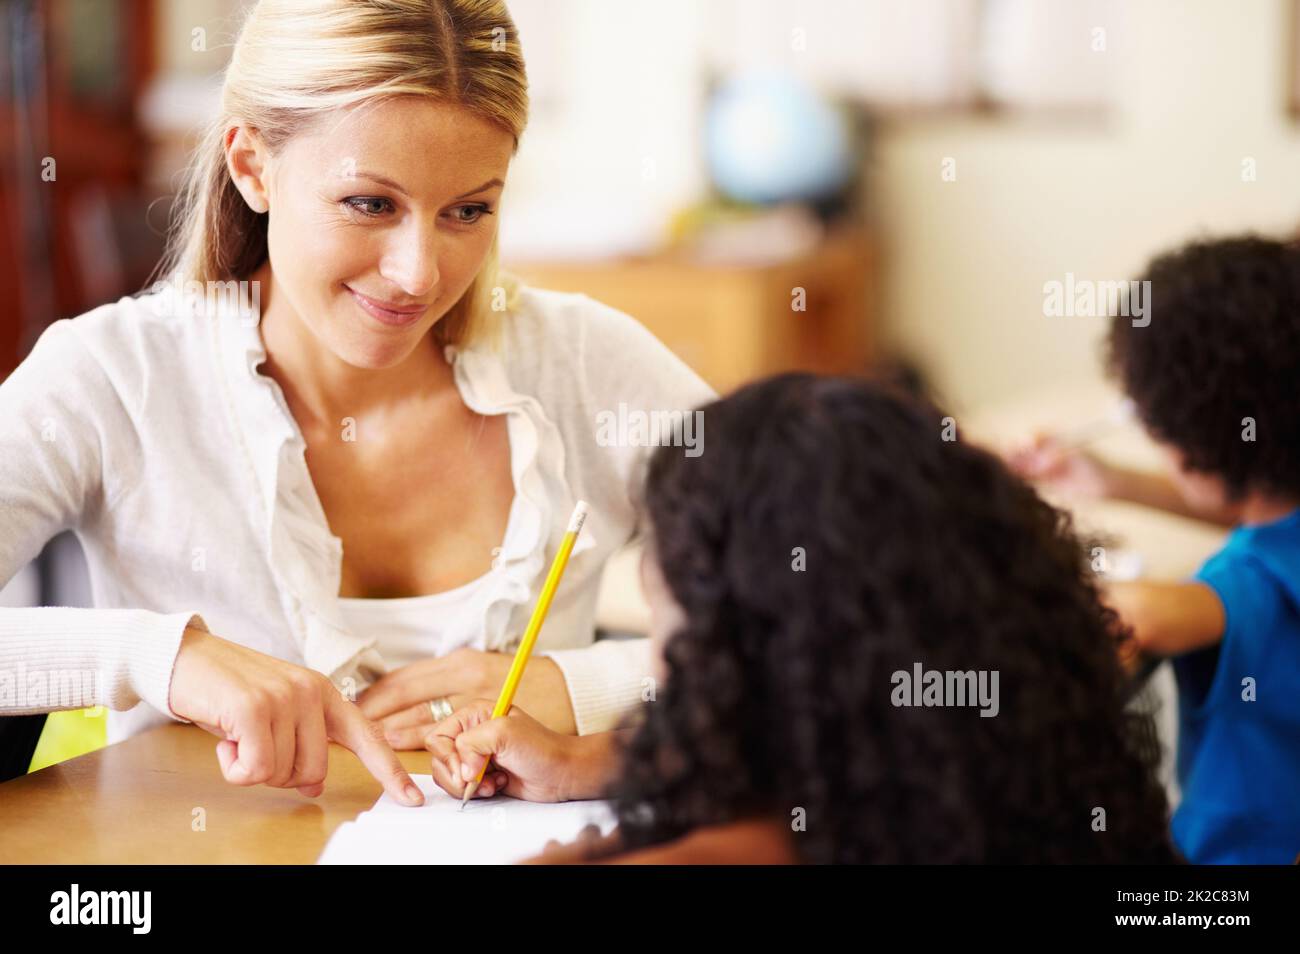 Ihre kleinen Freunde helfen. Eine junge Lehrerin, die Kindern bei ihrer Arbeit hilft. Stockfoto